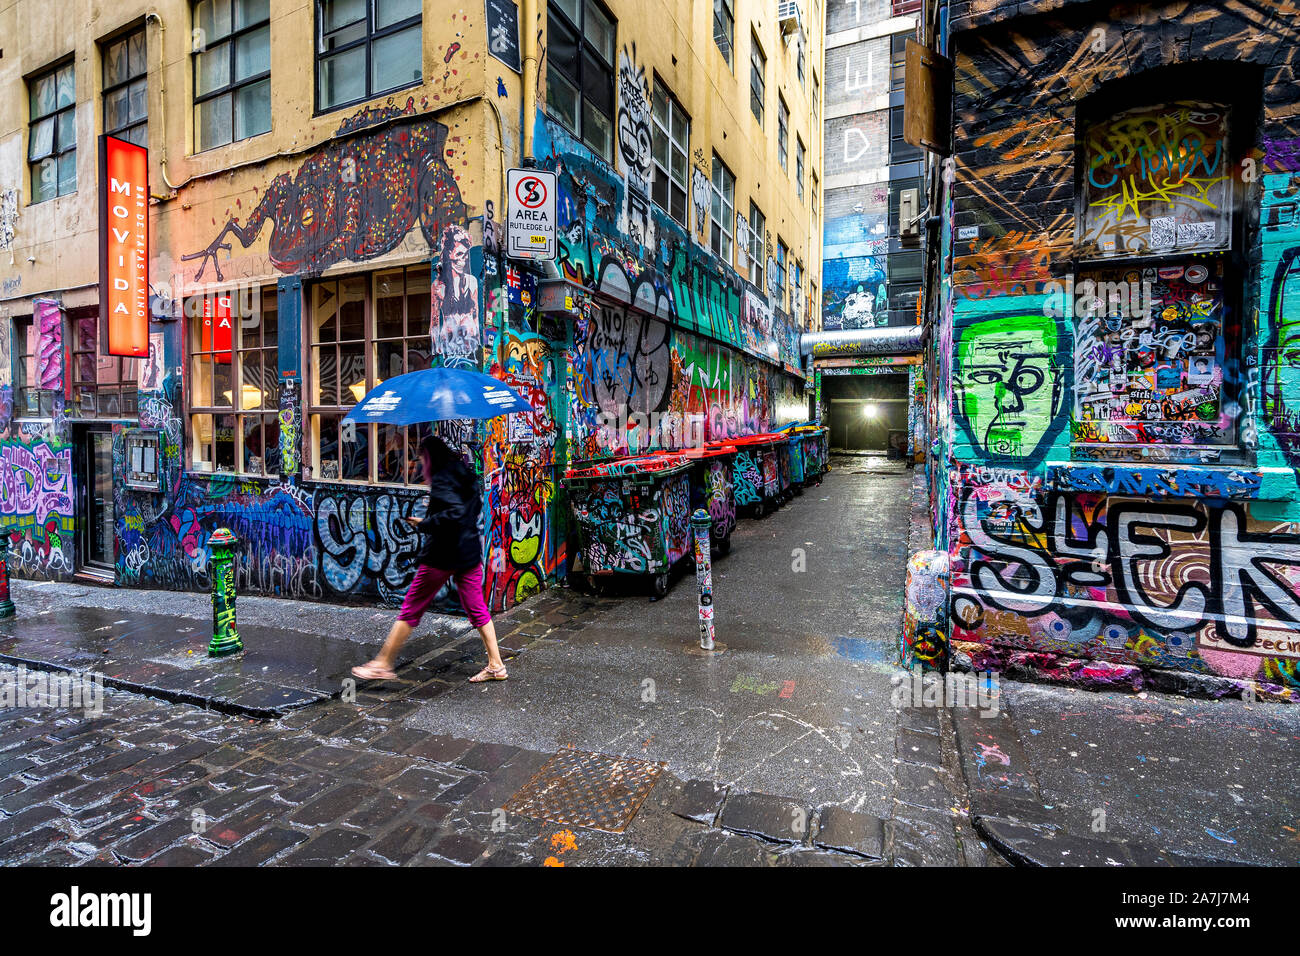 02 Nov 19. Melbourne, Victoria, Australien. Hosier Lane in Melbourne ist voll von Street Art und zieht Touristen und Einheimischen. Stockfoto